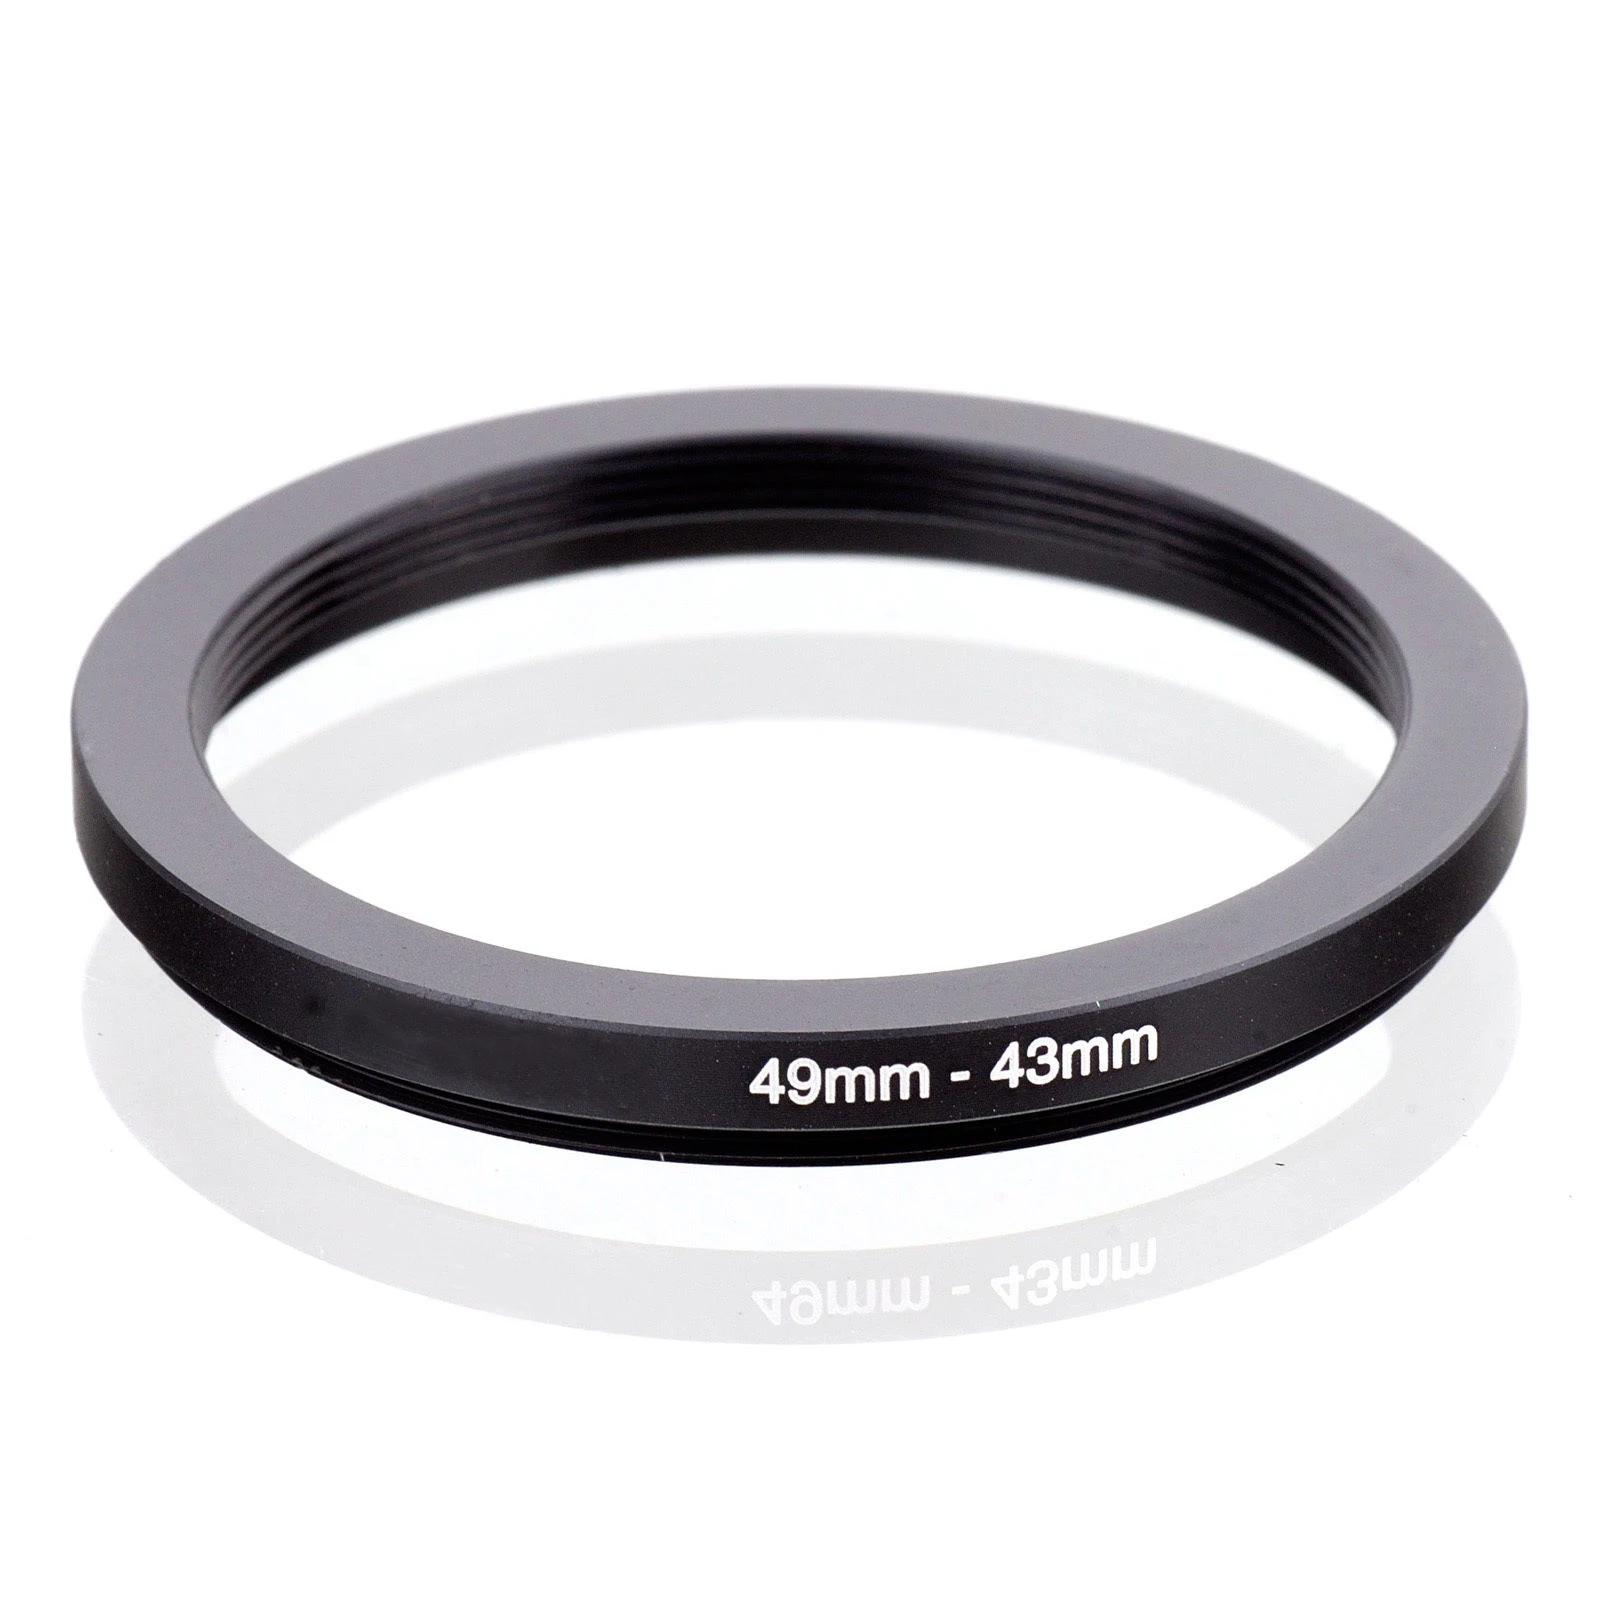 vhbw Adaptateur Bague Step-up diamètre de 43mm vers 49mm pour Objectif Appareil Photo Reflex numérique Noir 